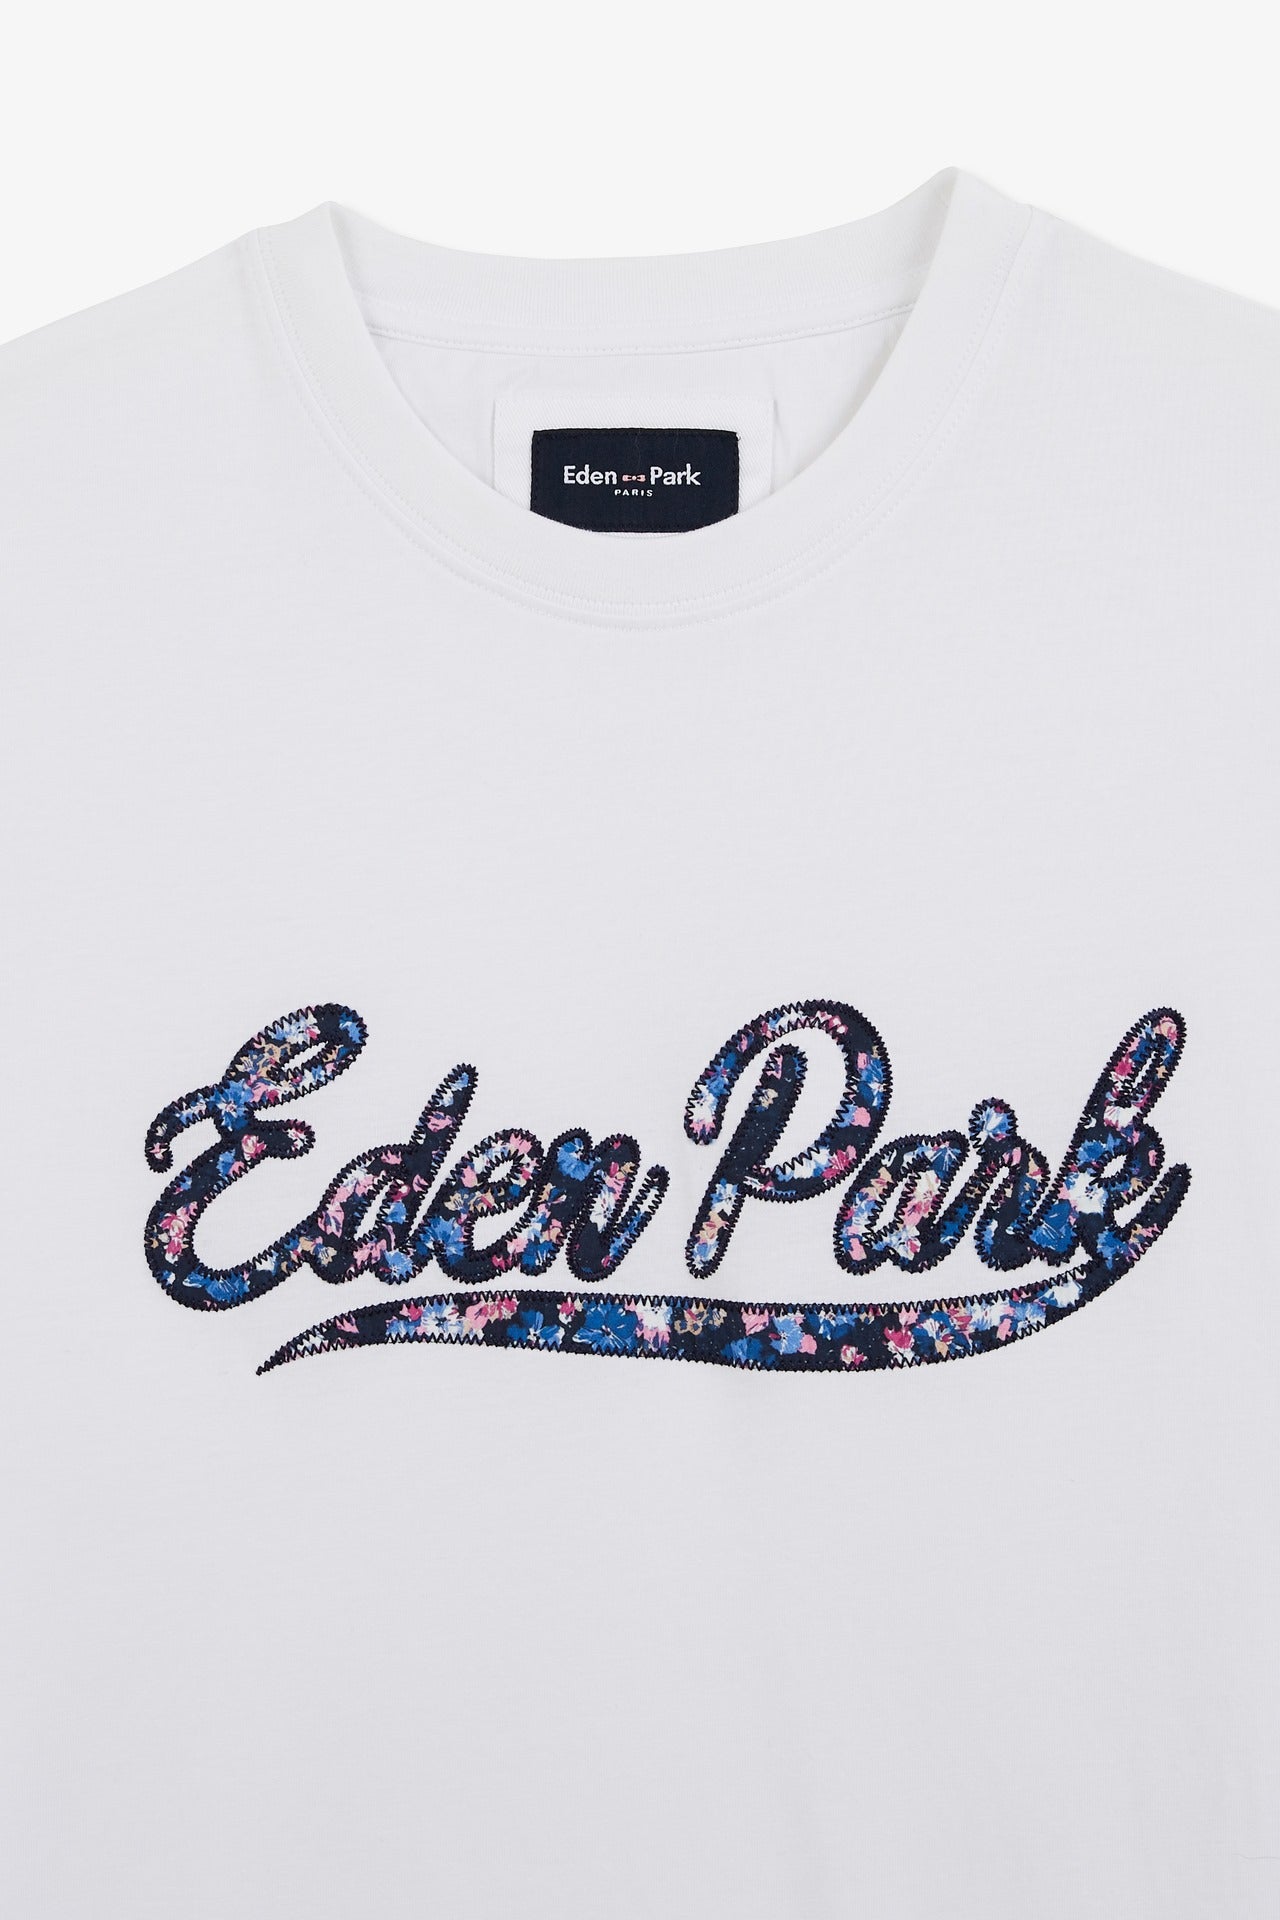 T-shirt uni blanc à inscription Eden Park